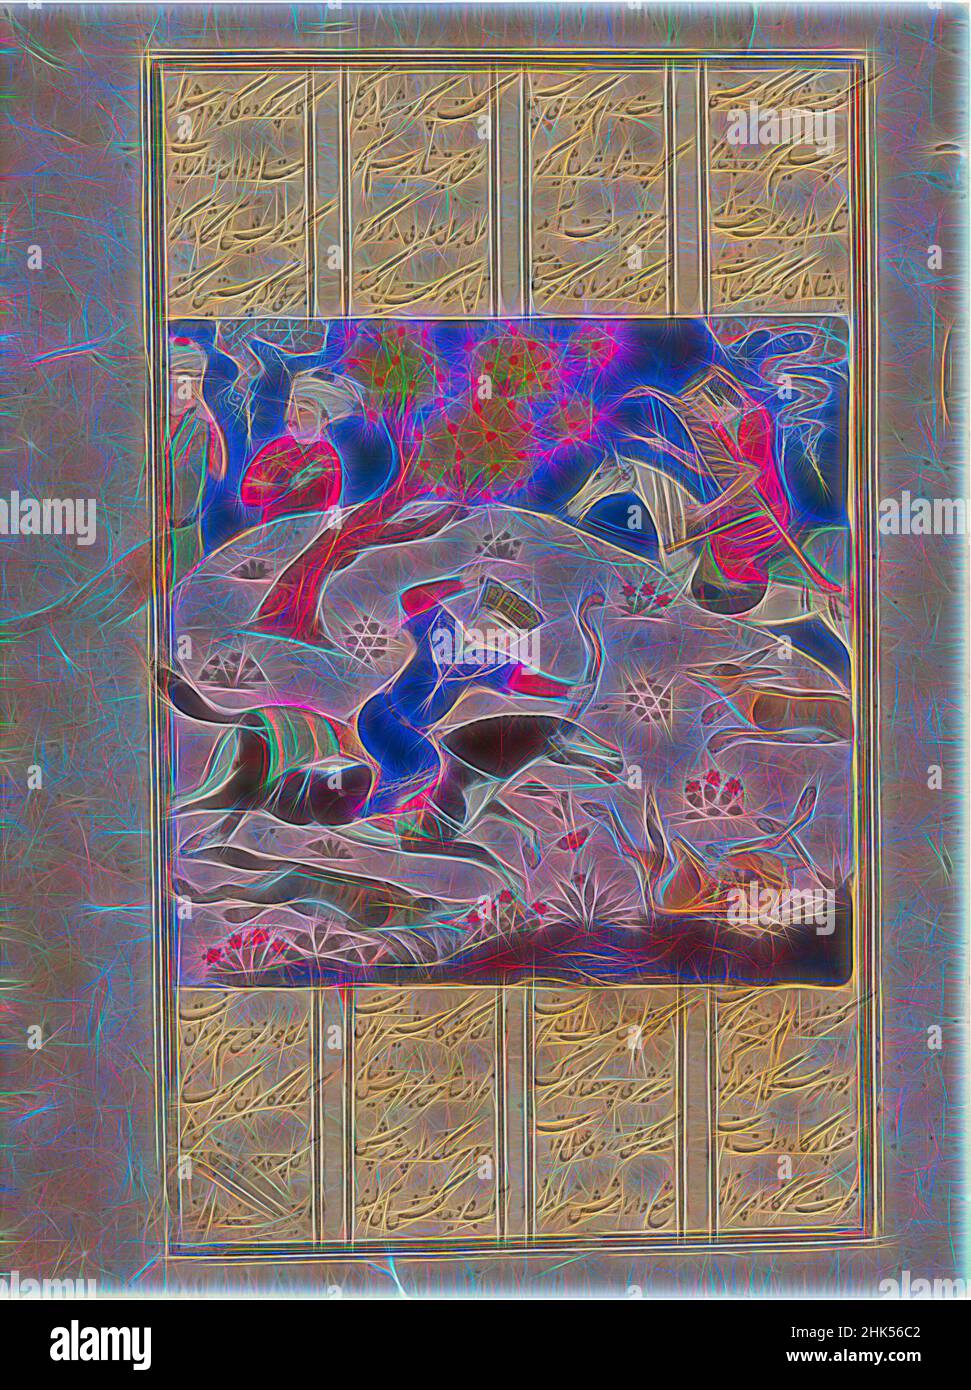 Inspiriert von Bahram Gur Hunting Onagers with Fitna, Page from the Haft paykar, Seven Portraits, from a Manuskript of the Khamsa, Quintett of Nizami, d. 1209, opakes Aquarell, Tinte, Silber und Gold auf Papier, ca. 1480-81, Turkman, 4 x 4 1/16 Zoll, 10,2 x 10,3 cm, Bogenschütze, bahram, Pfeil und Bogen, neu erfunden von Artotop. Klassische Kunst neu erfunden mit einem modernen Twist. Design von warmen fröhlichen Leuchten der Helligkeit und Lichtstrahl Strahlkraft. Fotografie inspiriert von Surrealismus und Futurismus, umarmt dynamische Energie der modernen Technologie, Bewegung, Geschwindigkeit und Kultur zu revolutionieren Stockfoto